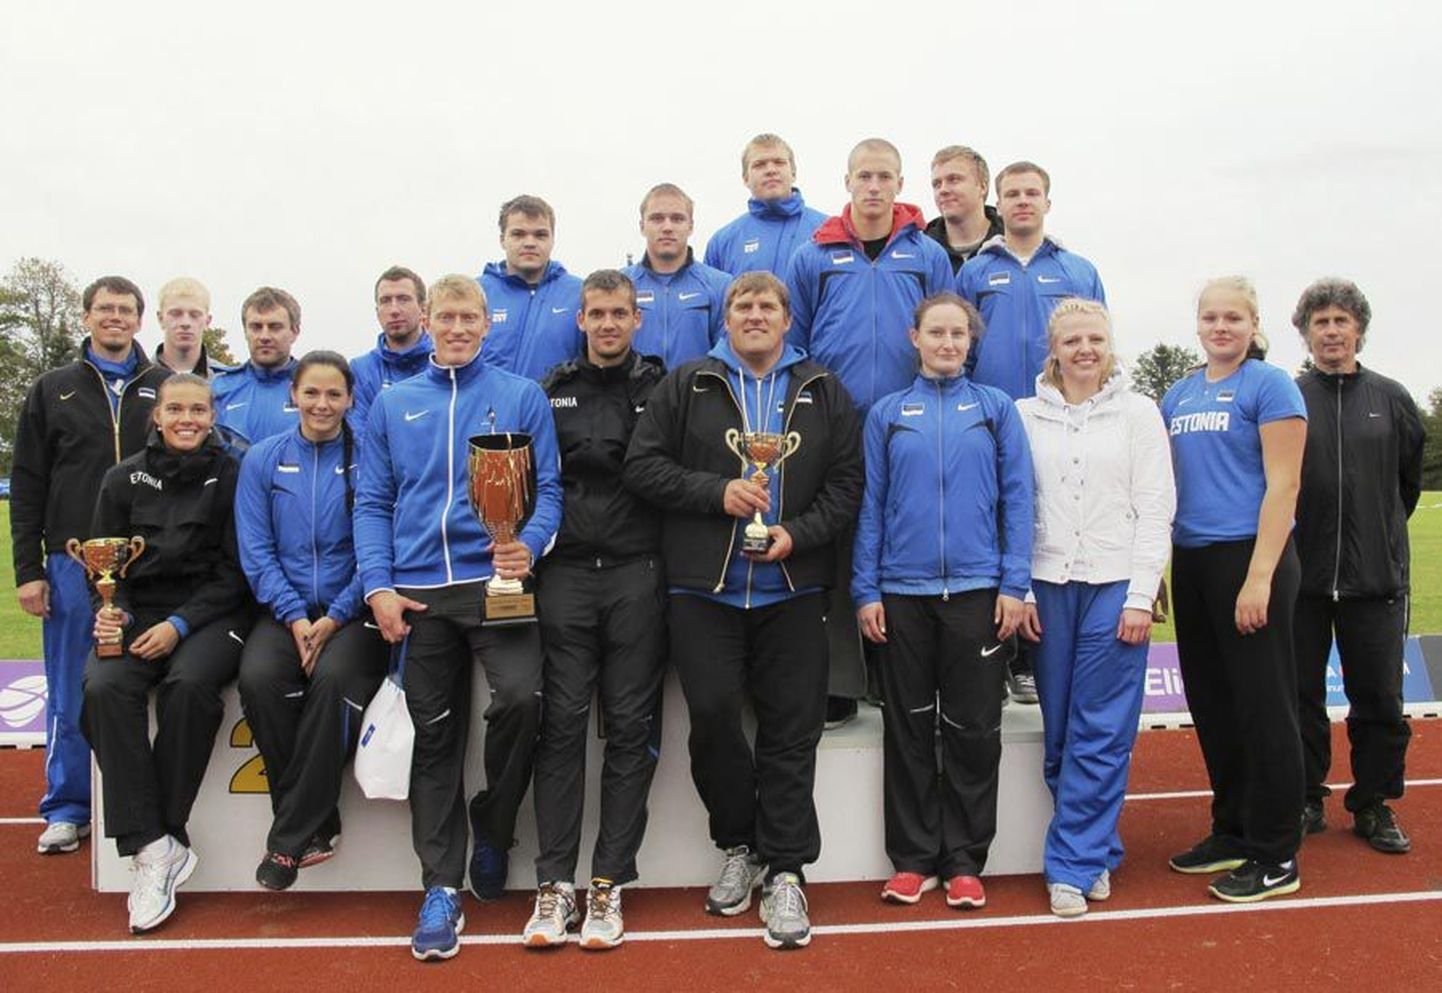 Eesti koondis oli Balti matšil võidukas. Fotol on osa selle 26 liikmest.